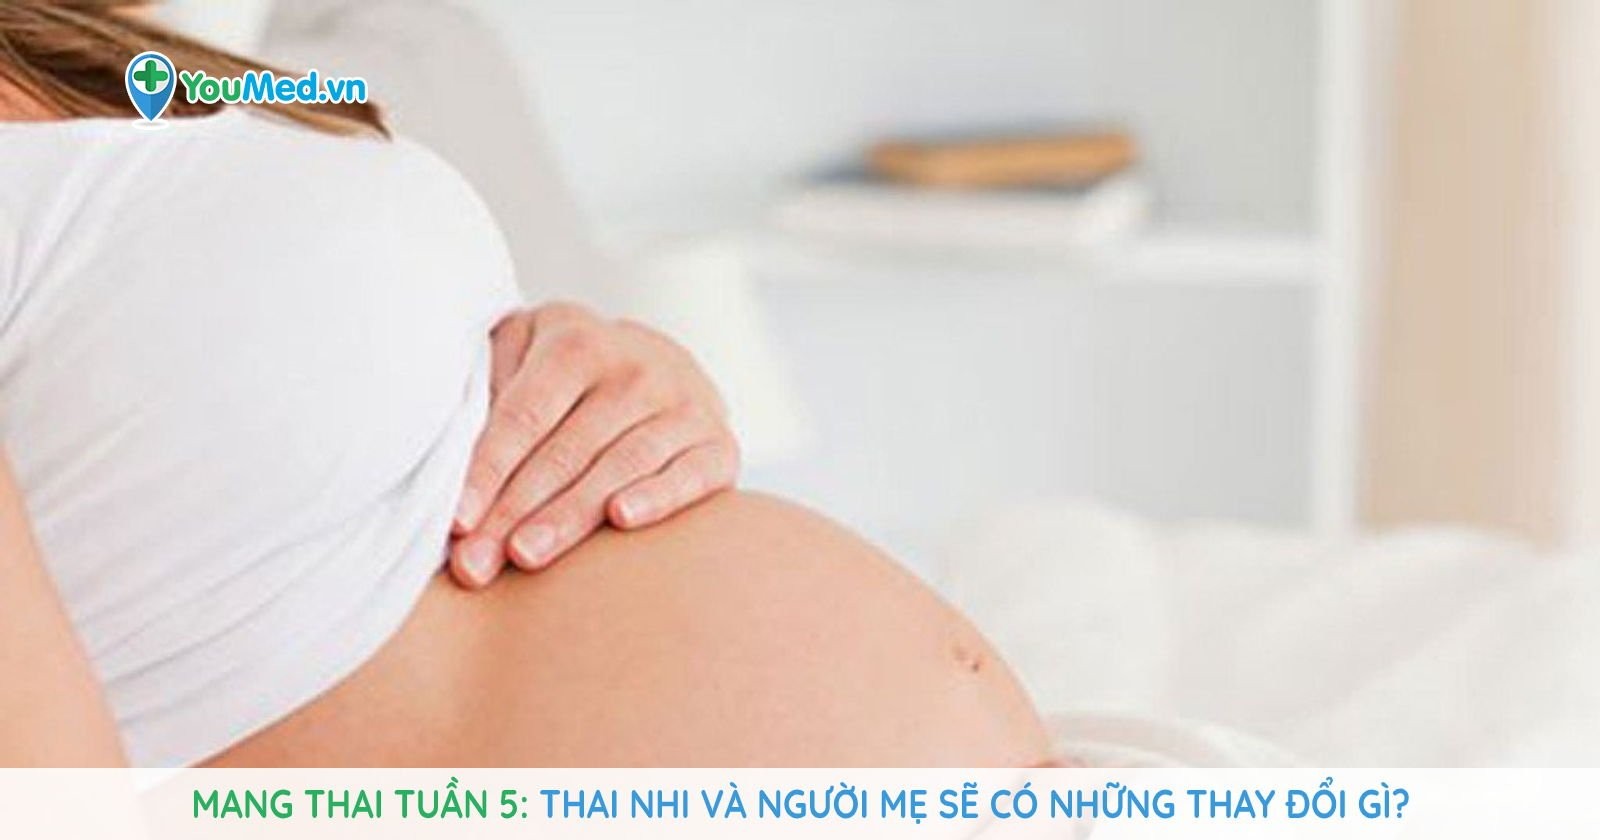 Mang thai tuần 5: Thai nhi và người mẹ sẽ có những thay đổi gì?